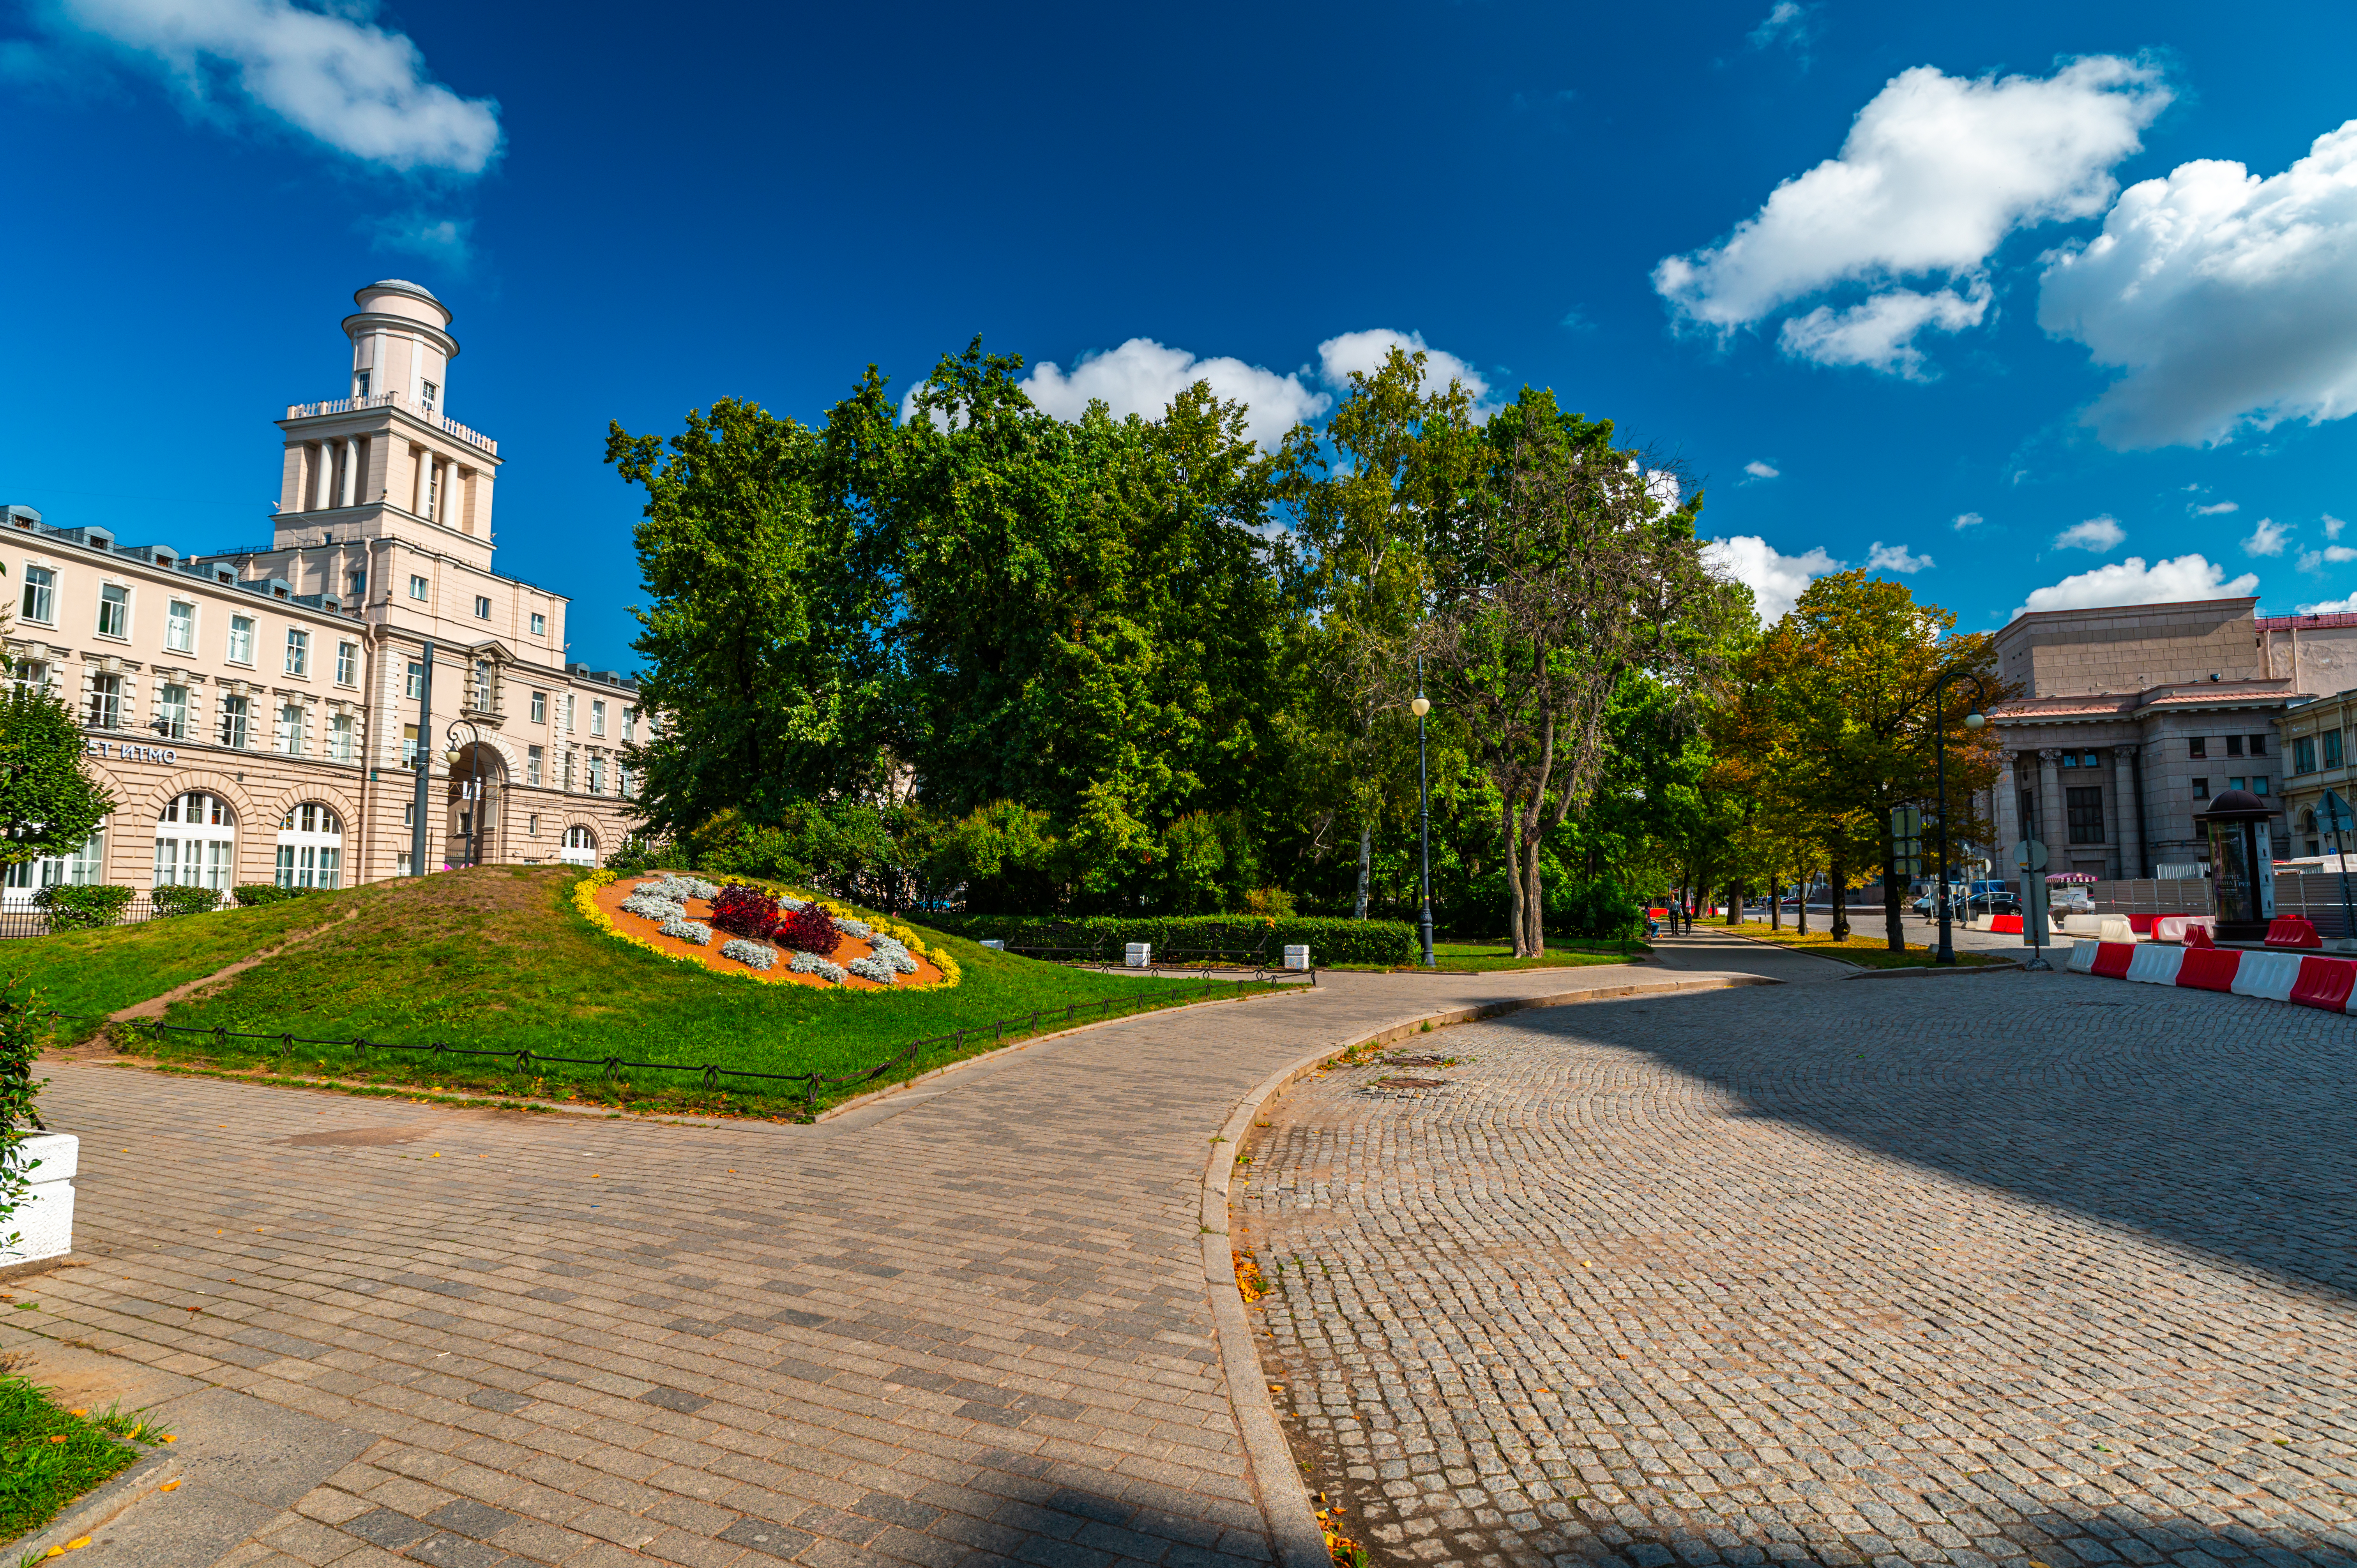 Alexandrovskiy Park